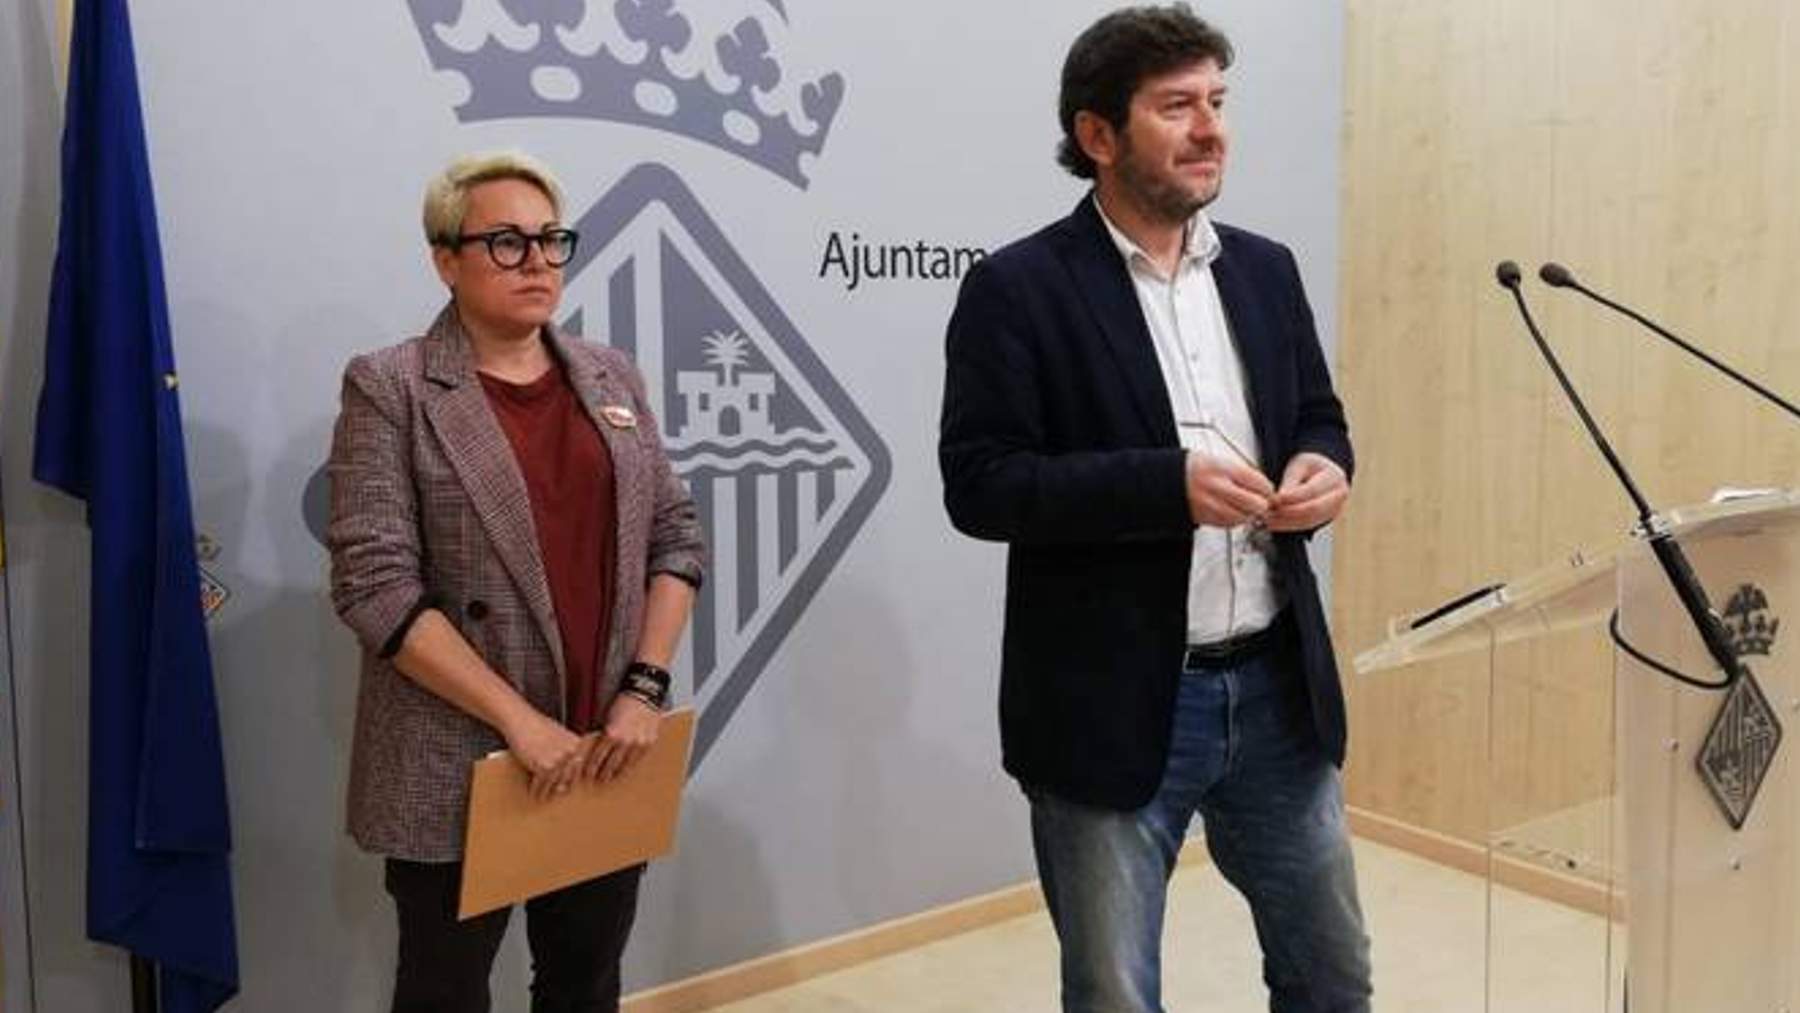 Los concejales de Podemos en el Ayuntamiento de Palma, Alberto Jarabo y Sonia Vivas.